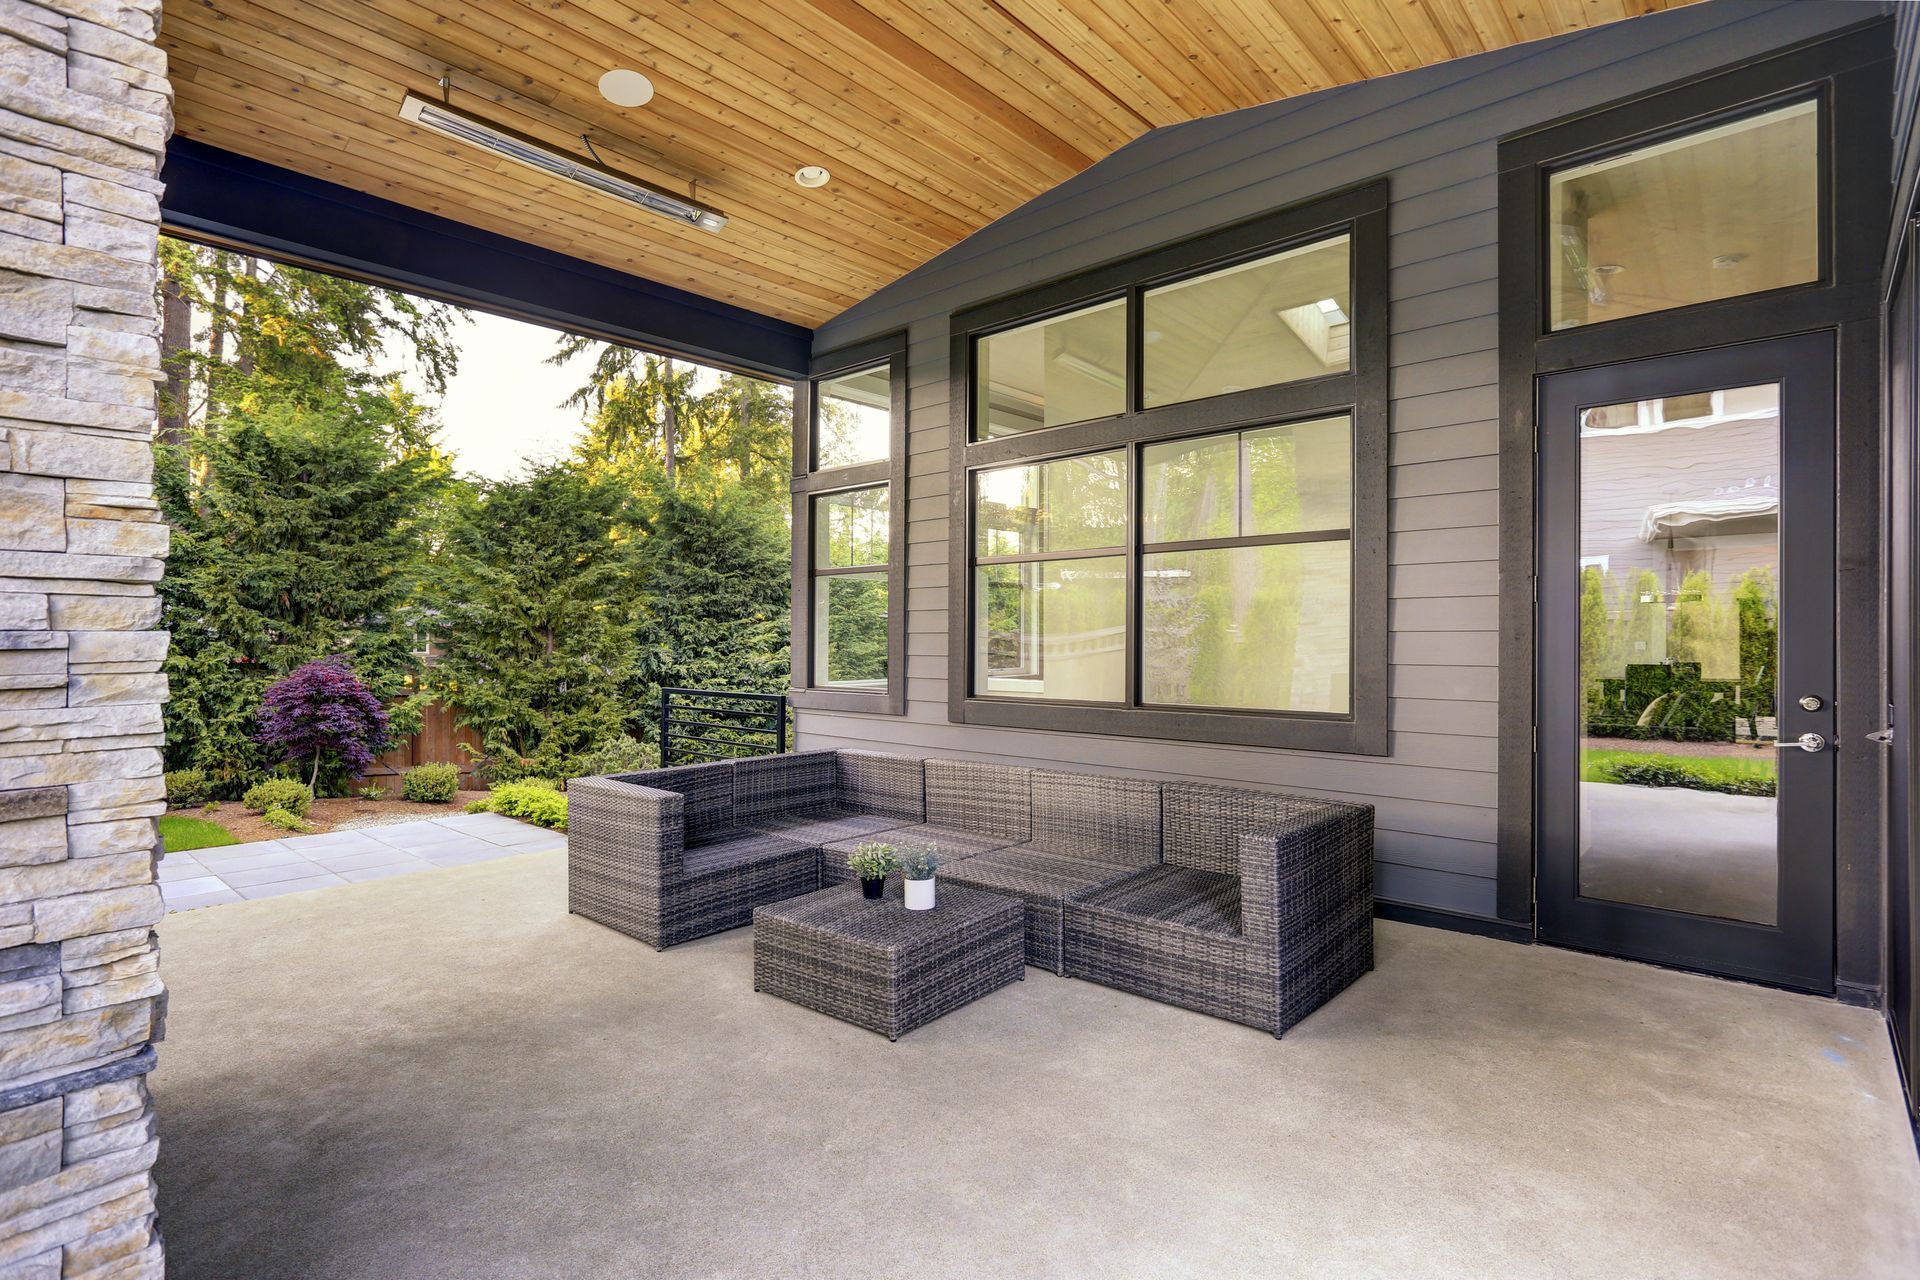 Contemporary home with a backyard showcasing a concrete patio.